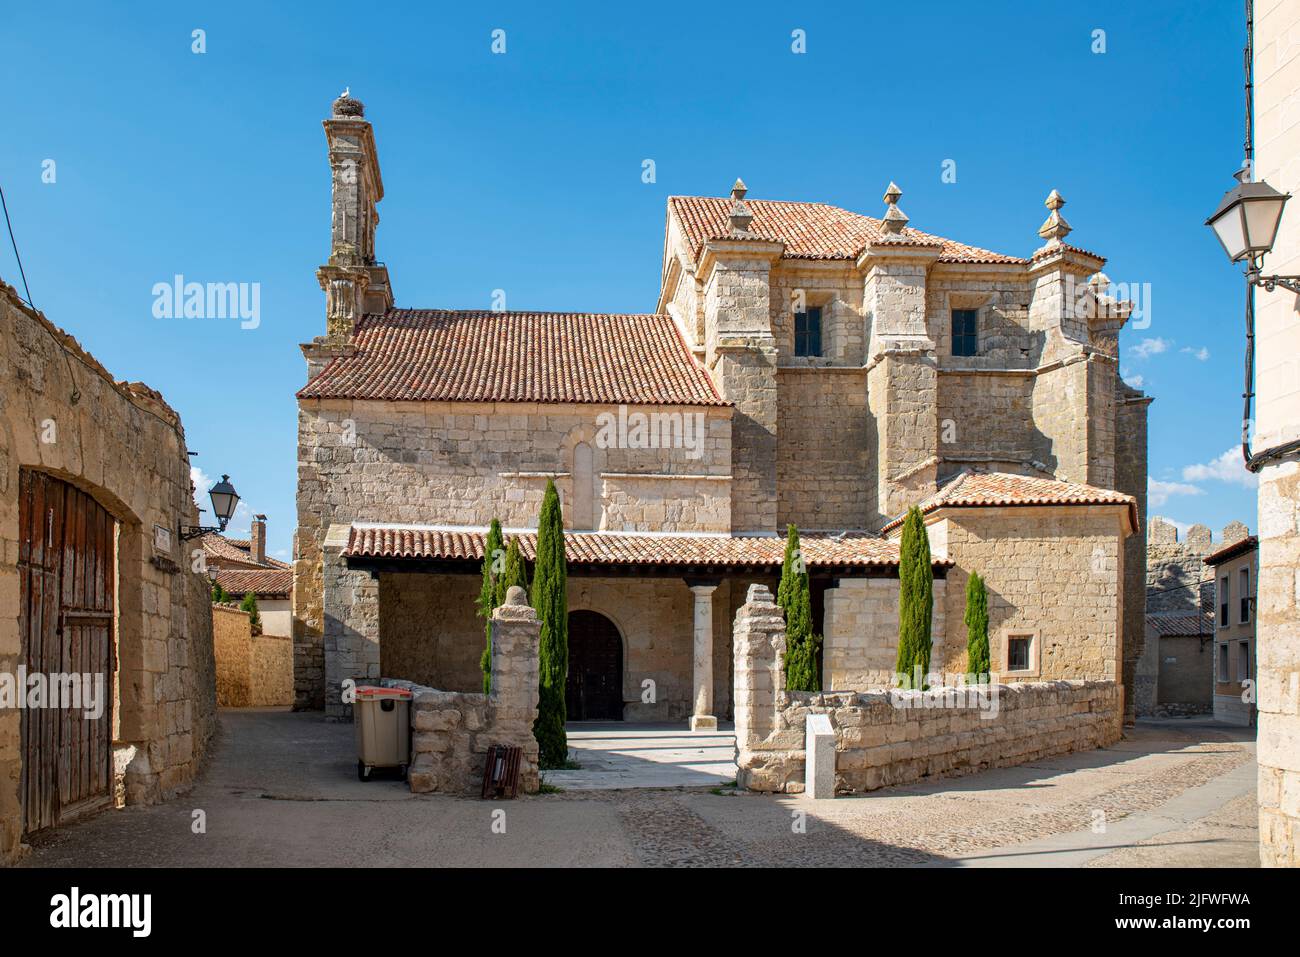 Santa Maria del Azogue church of the medieval village of Uruena, Valladolid, Spain Stock Photo